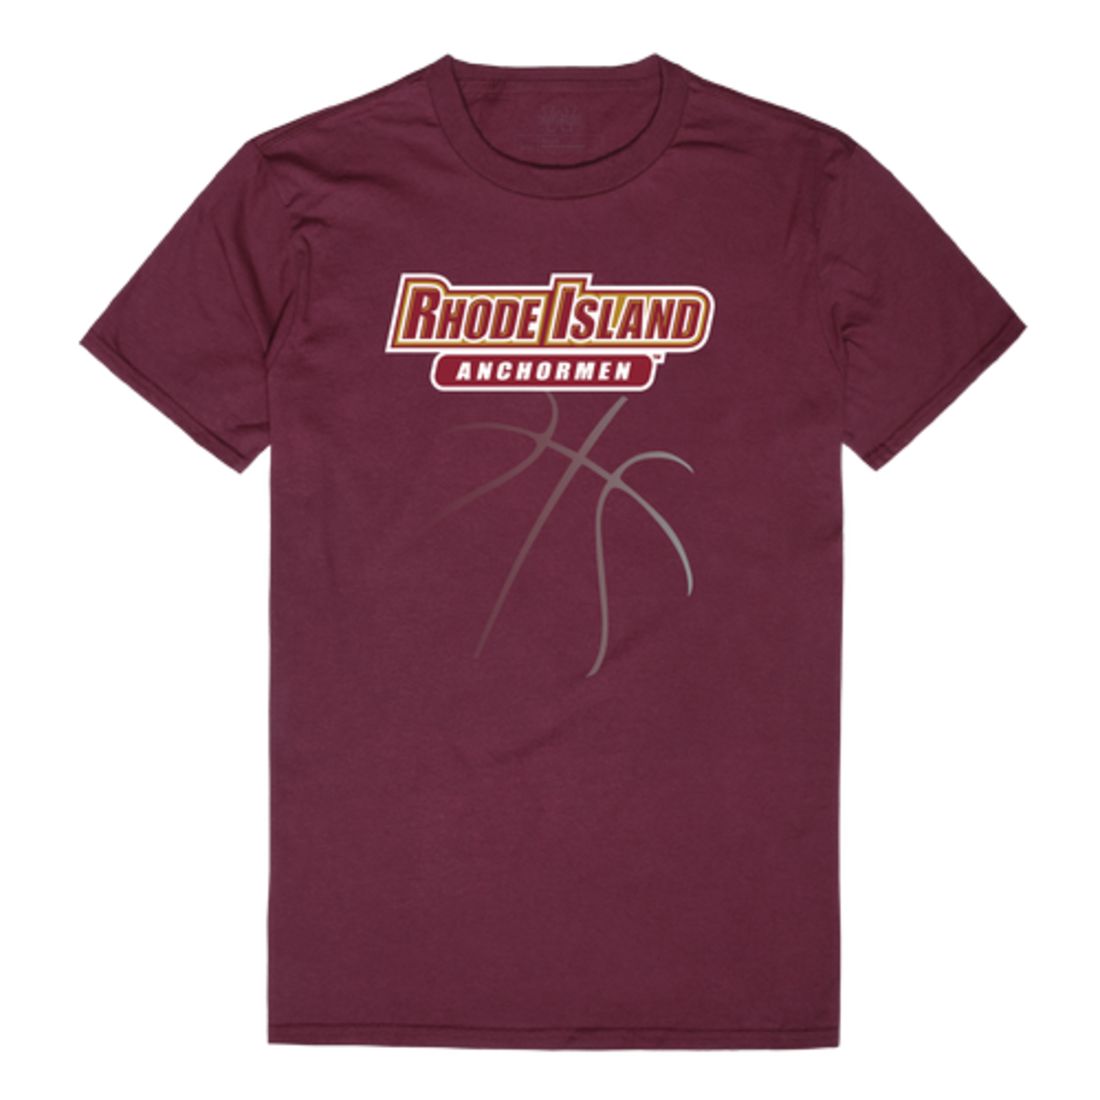 Rhode Island College Anchormen Basketball T-Shirt Tee